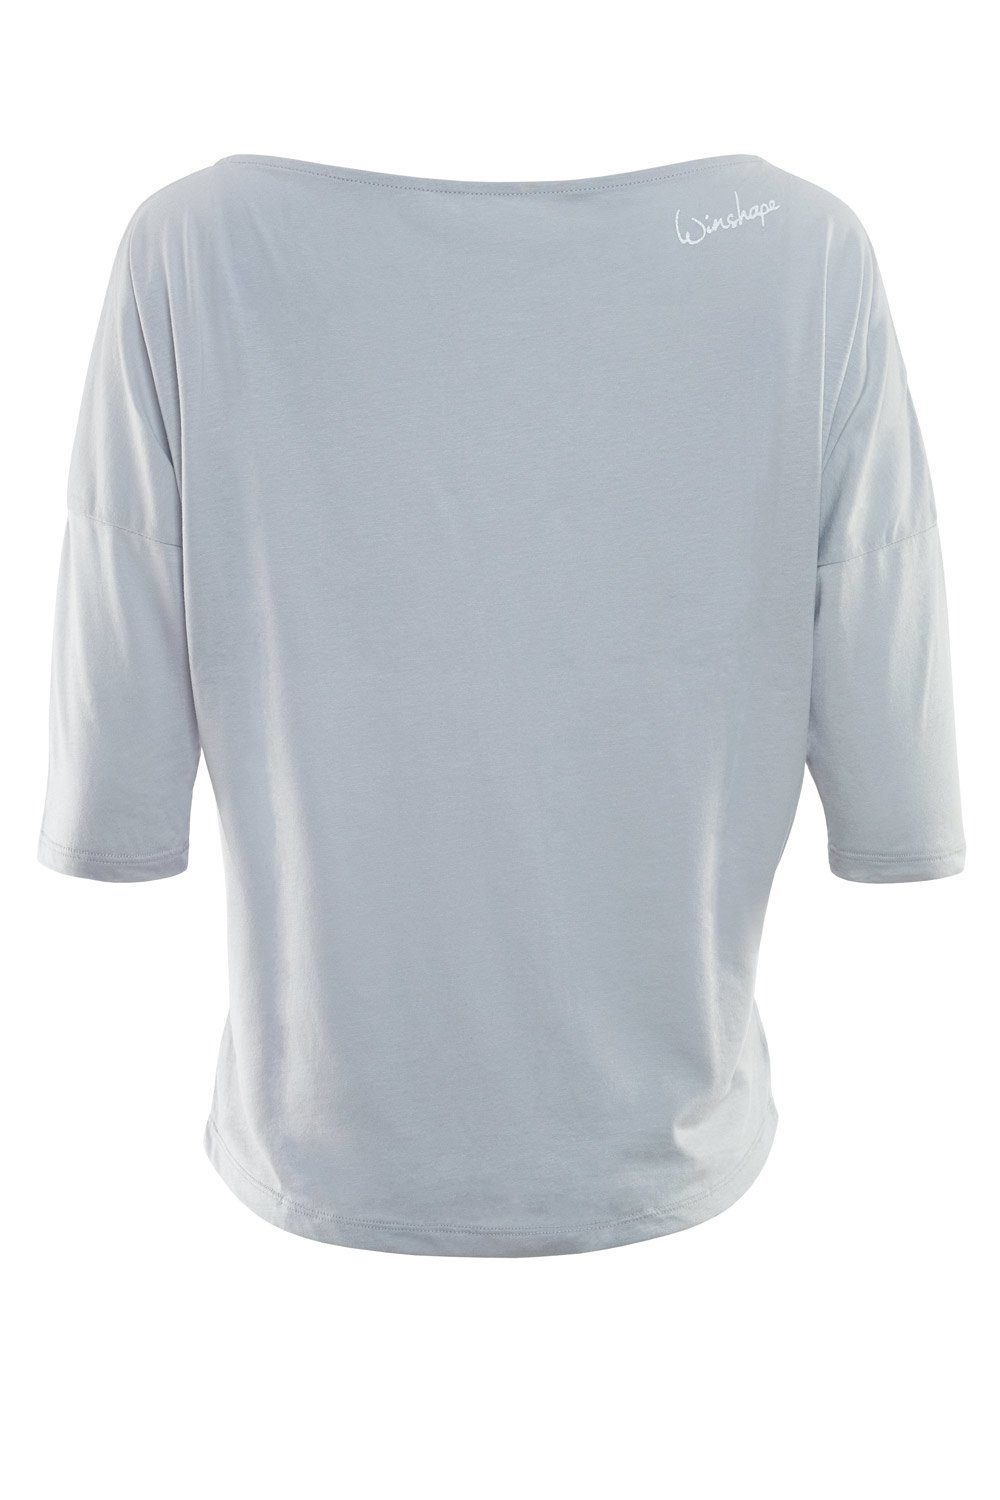 3/4-Arm-Shirt cool - Winshape ultra mit glitzer MCS001 weißem weiß Glitzer-Aufdruck grey leicht